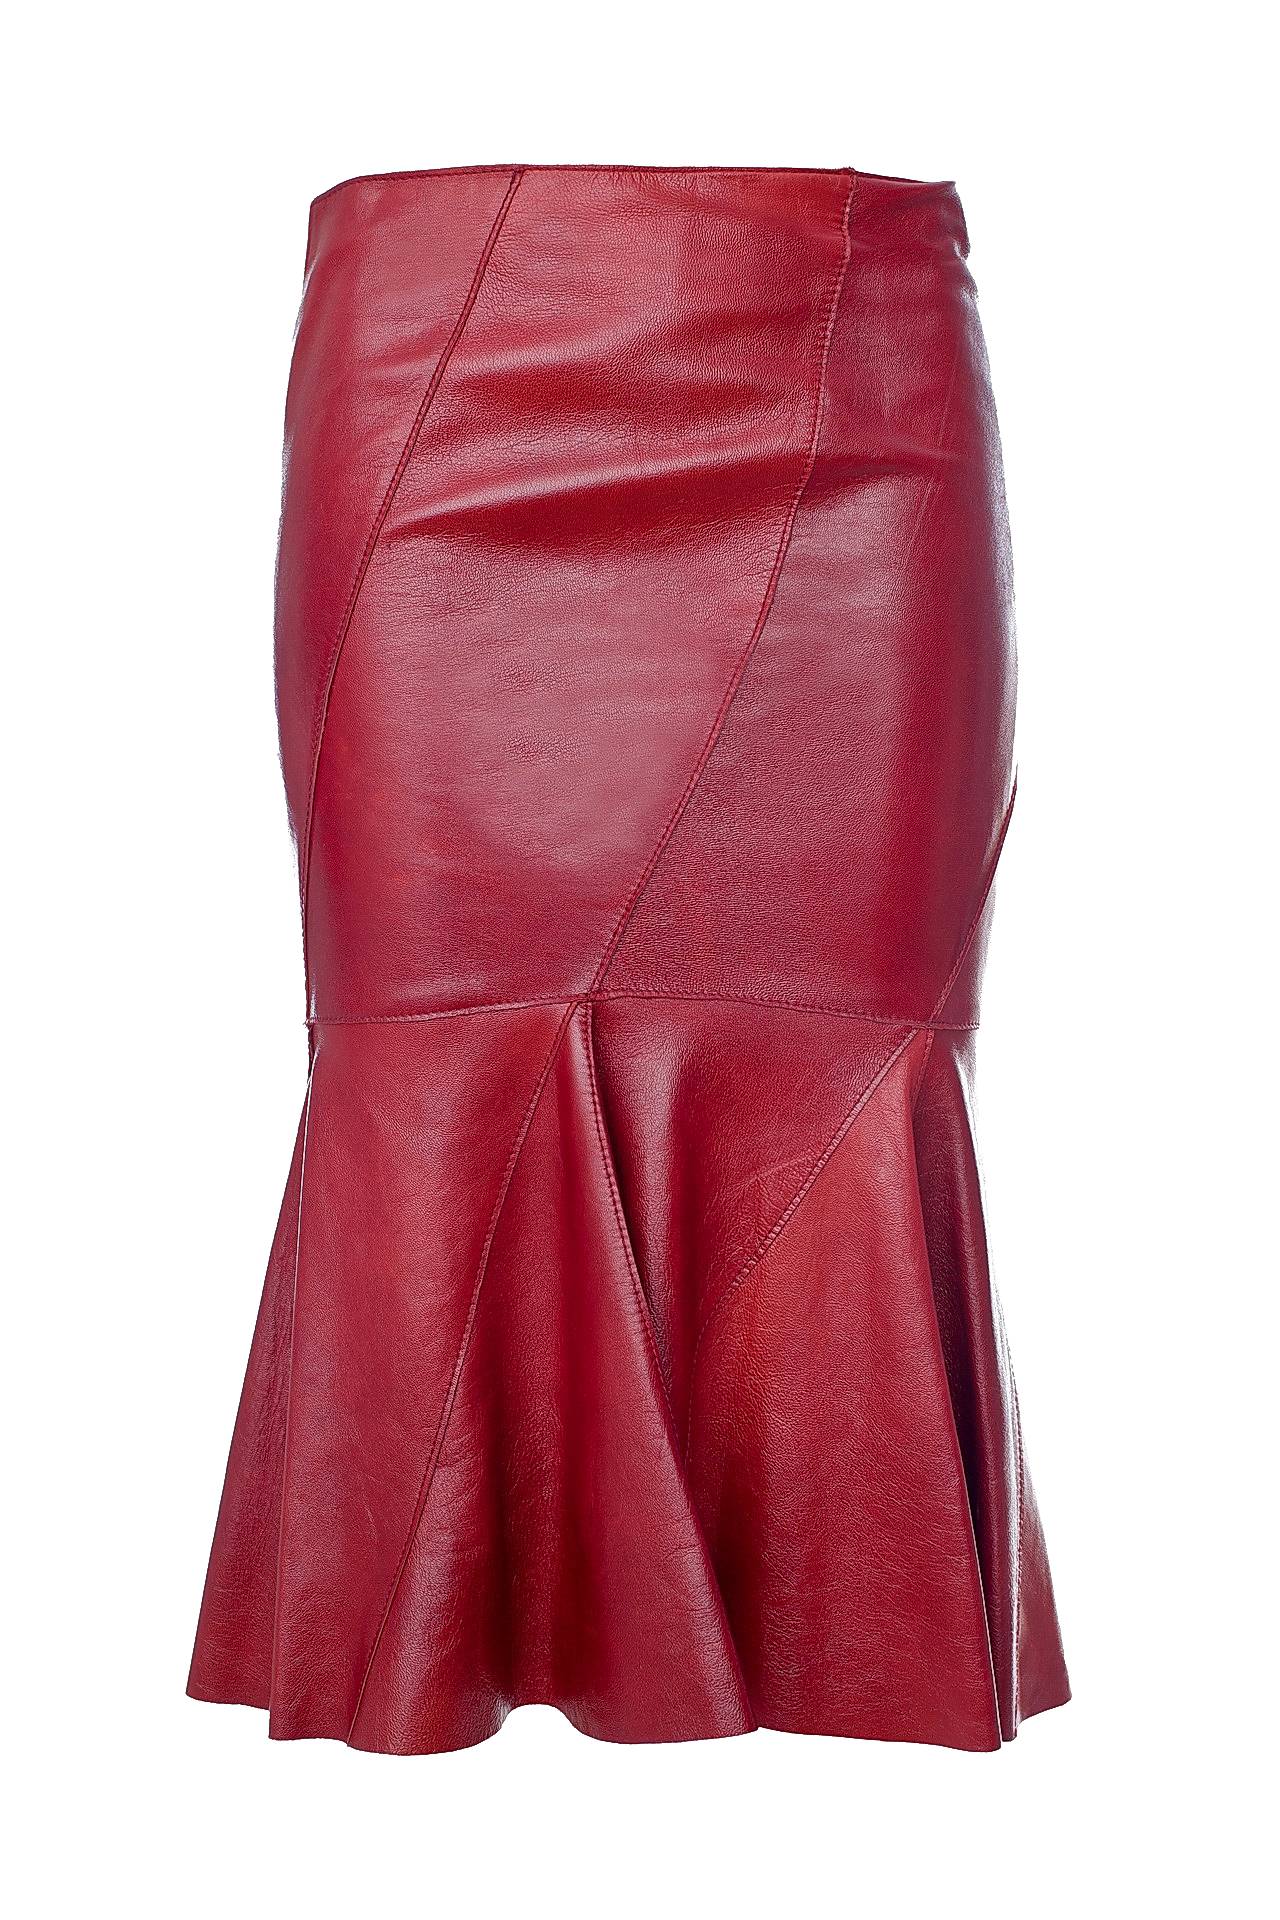 Одежда женская Юбка DOLCE & GABBANA (A15035461/00). Купить за 7980 руб.